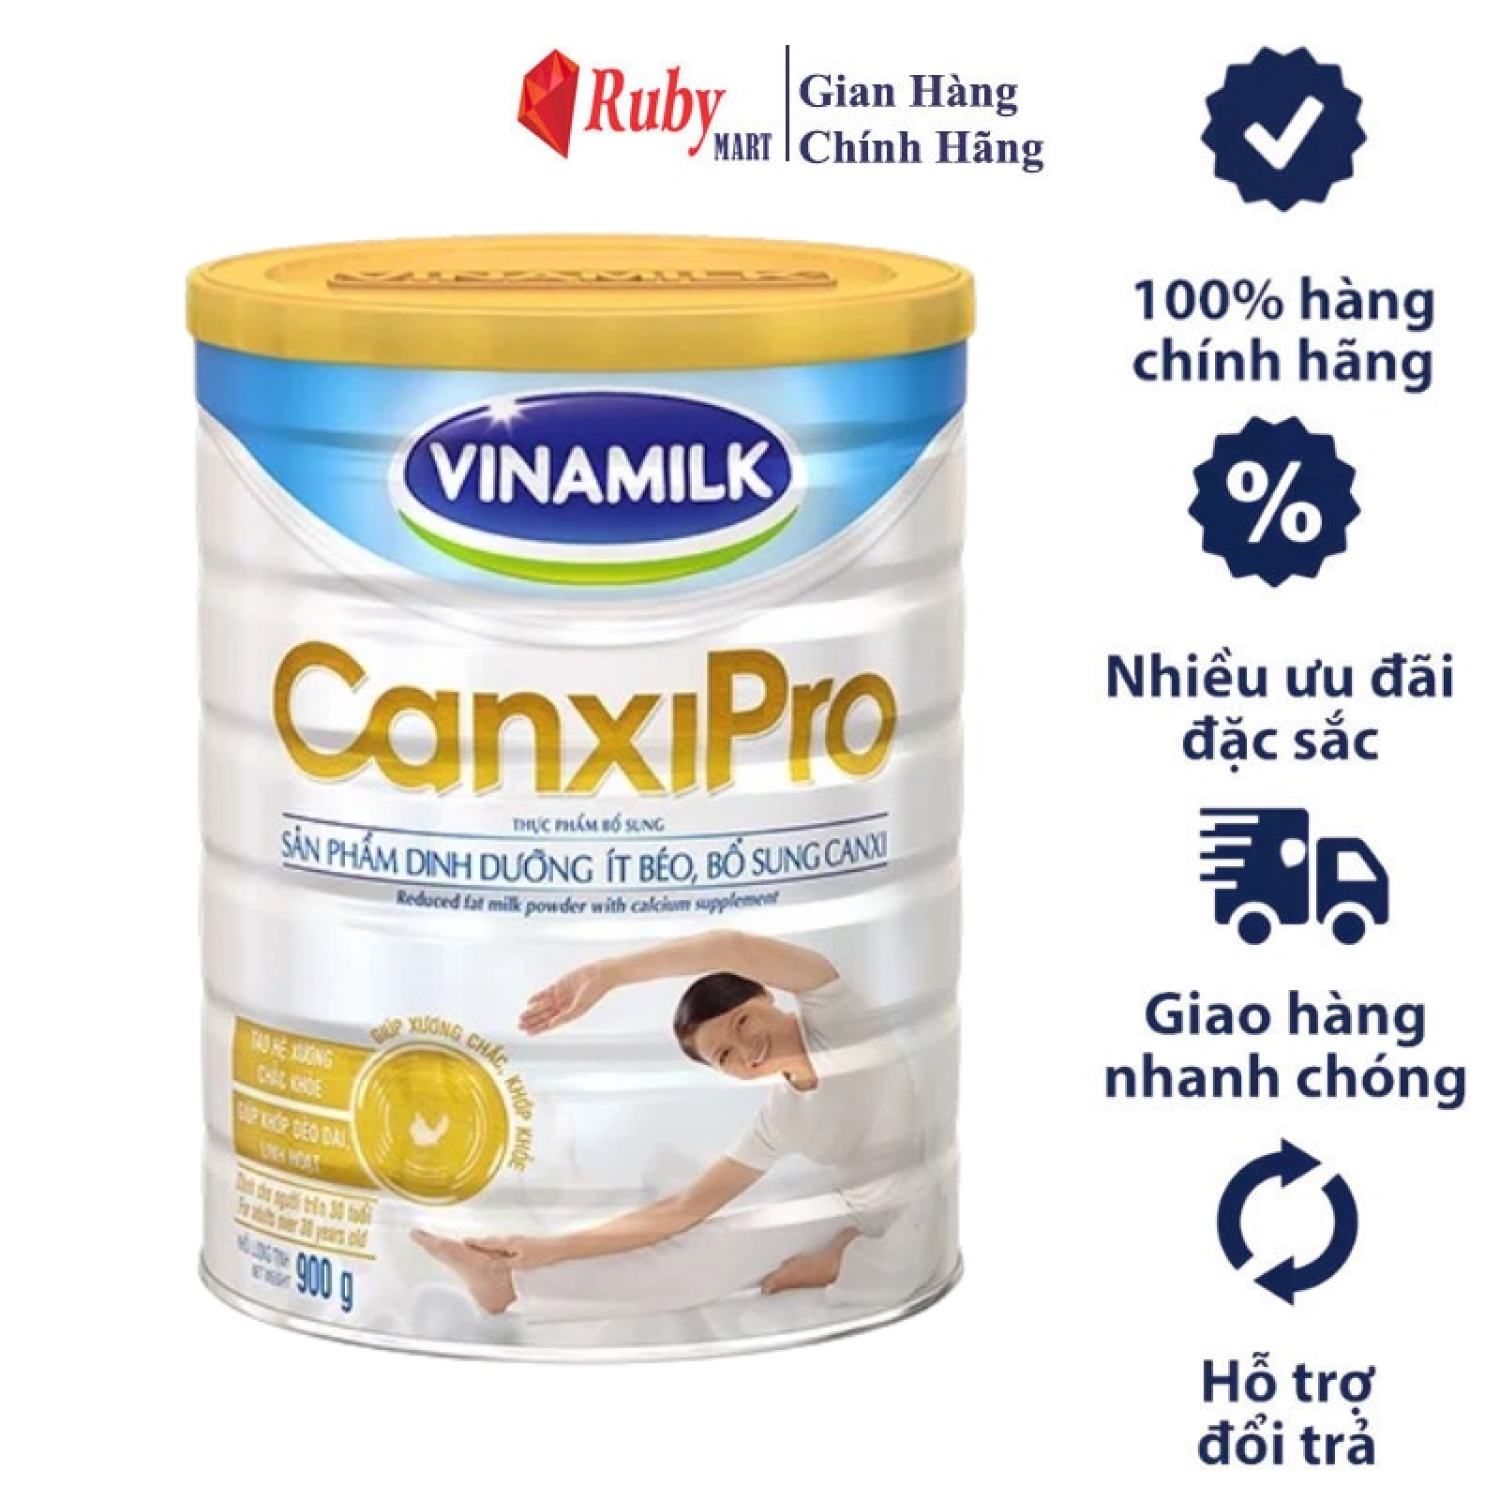 Sữa bột Vinamilk CanxiPro dinh dưỡng ít béo